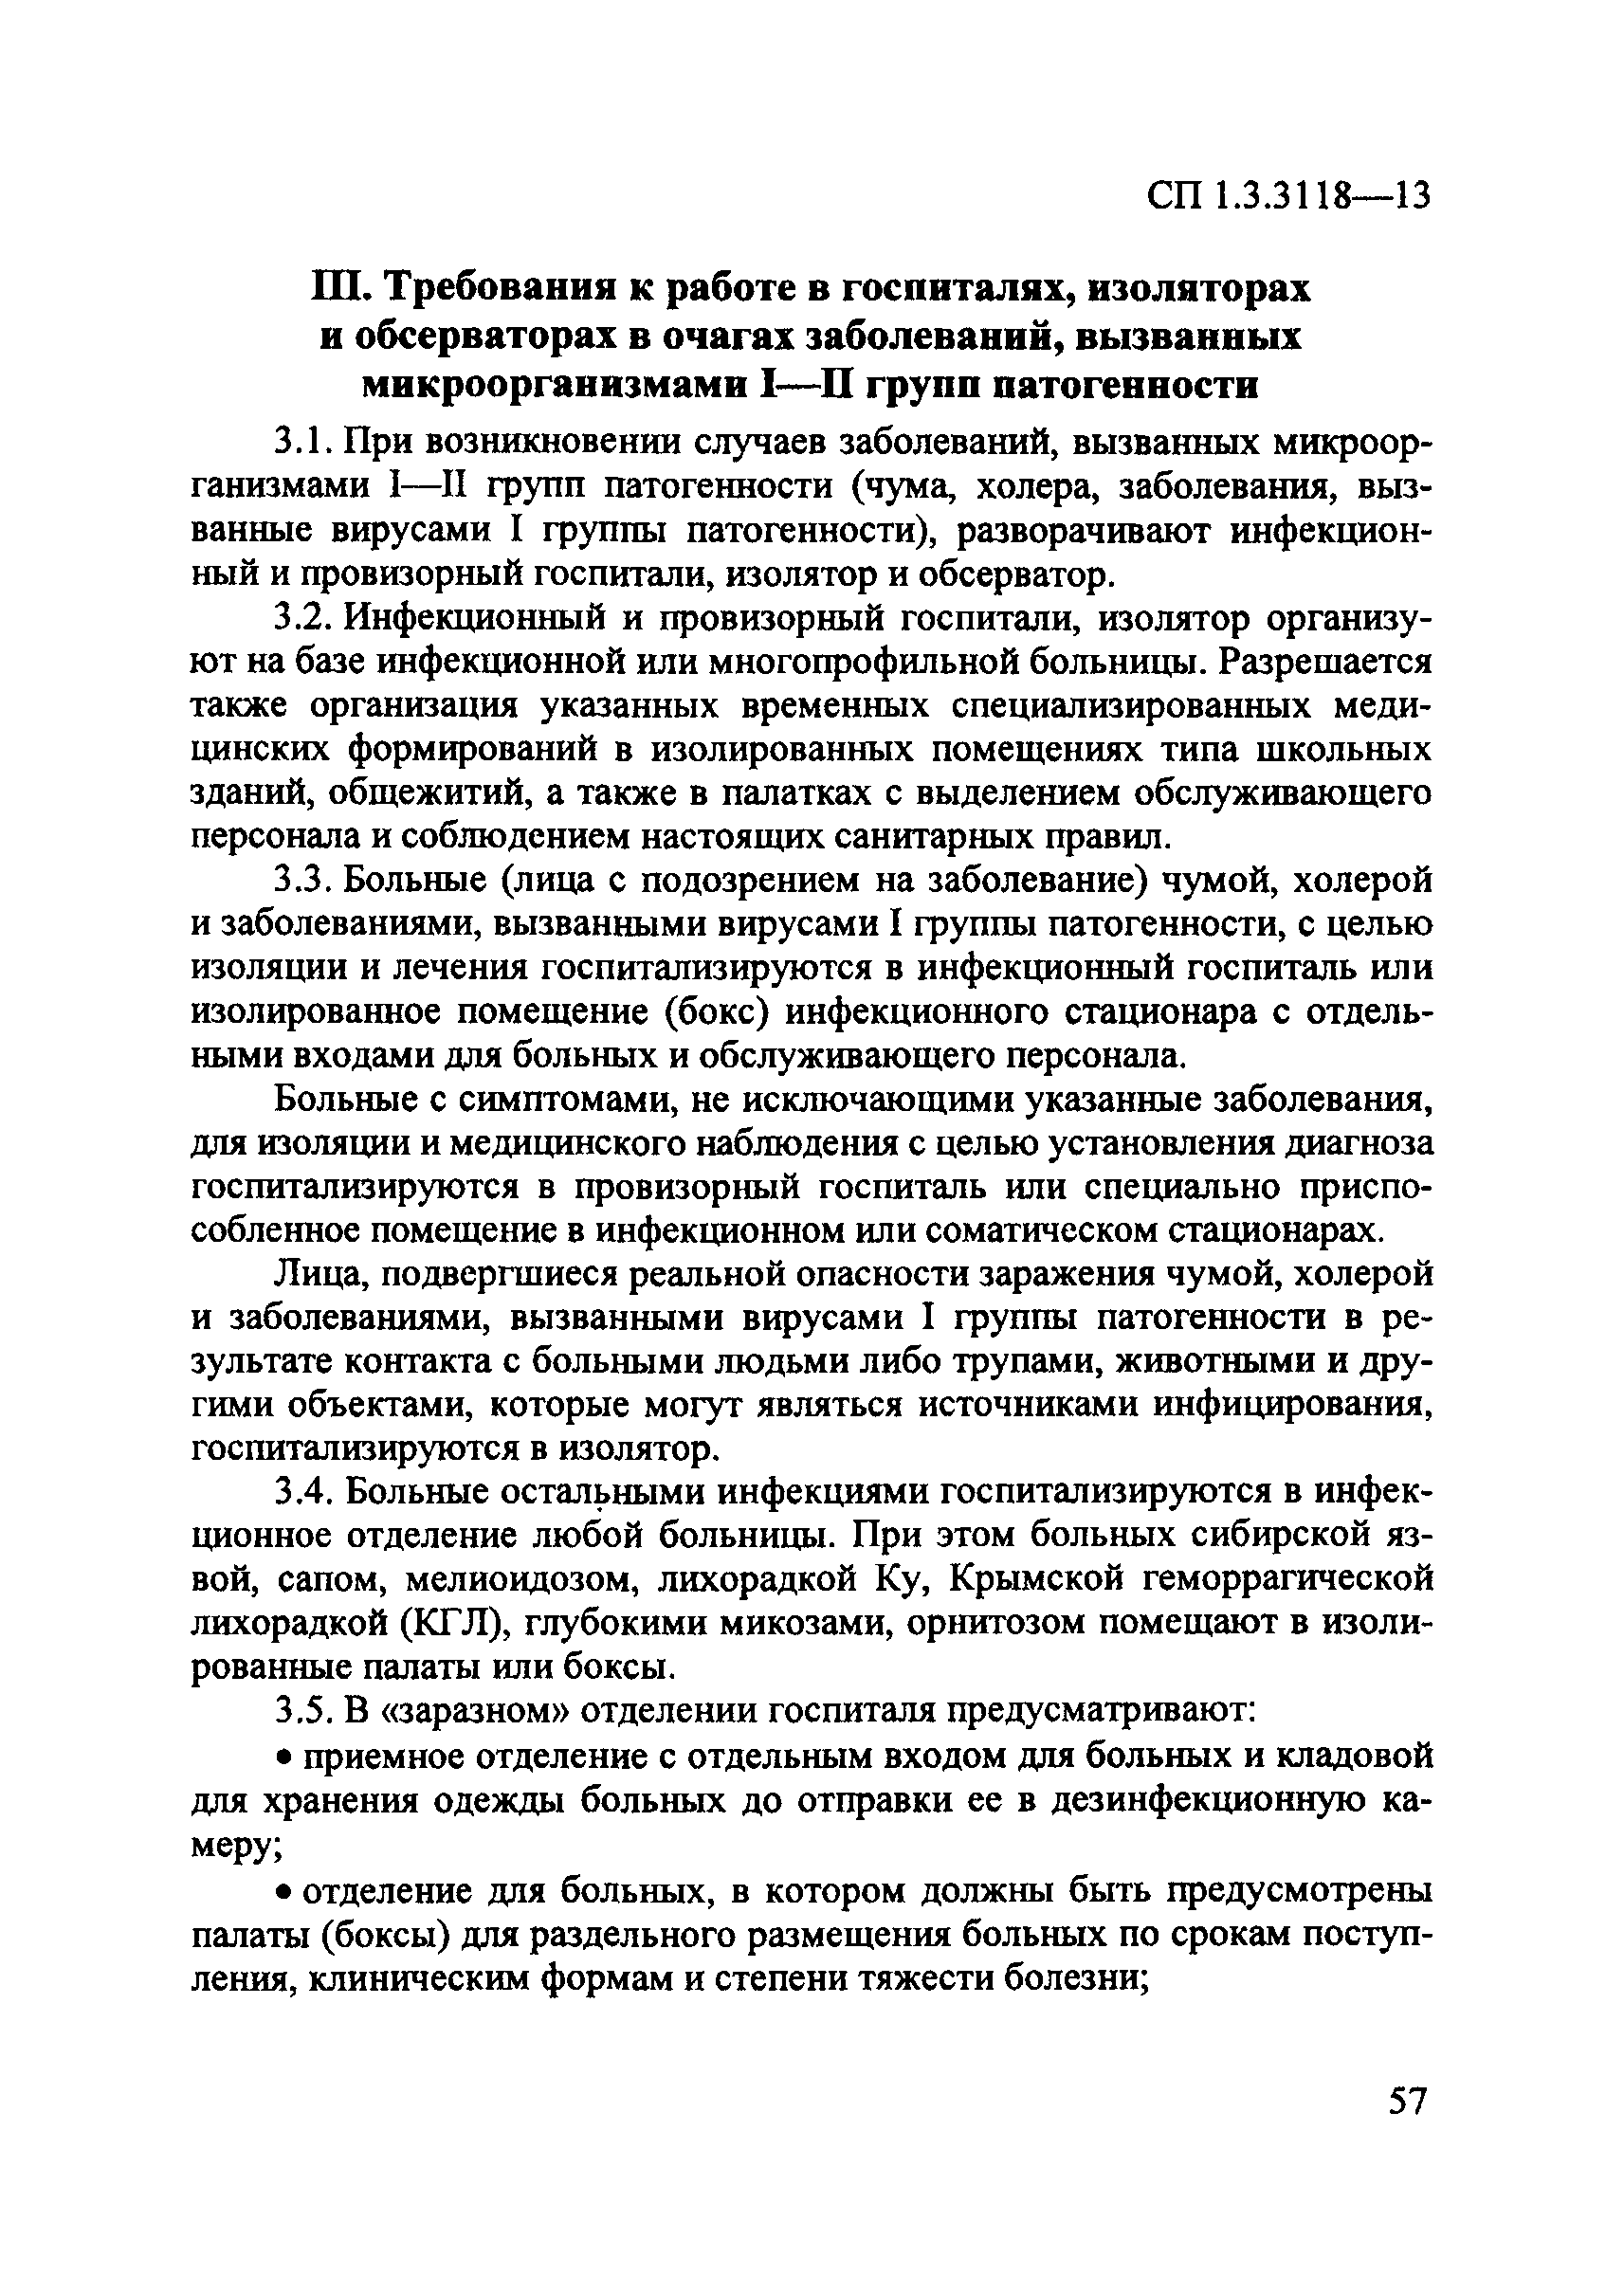 СП 1.3.3118-13